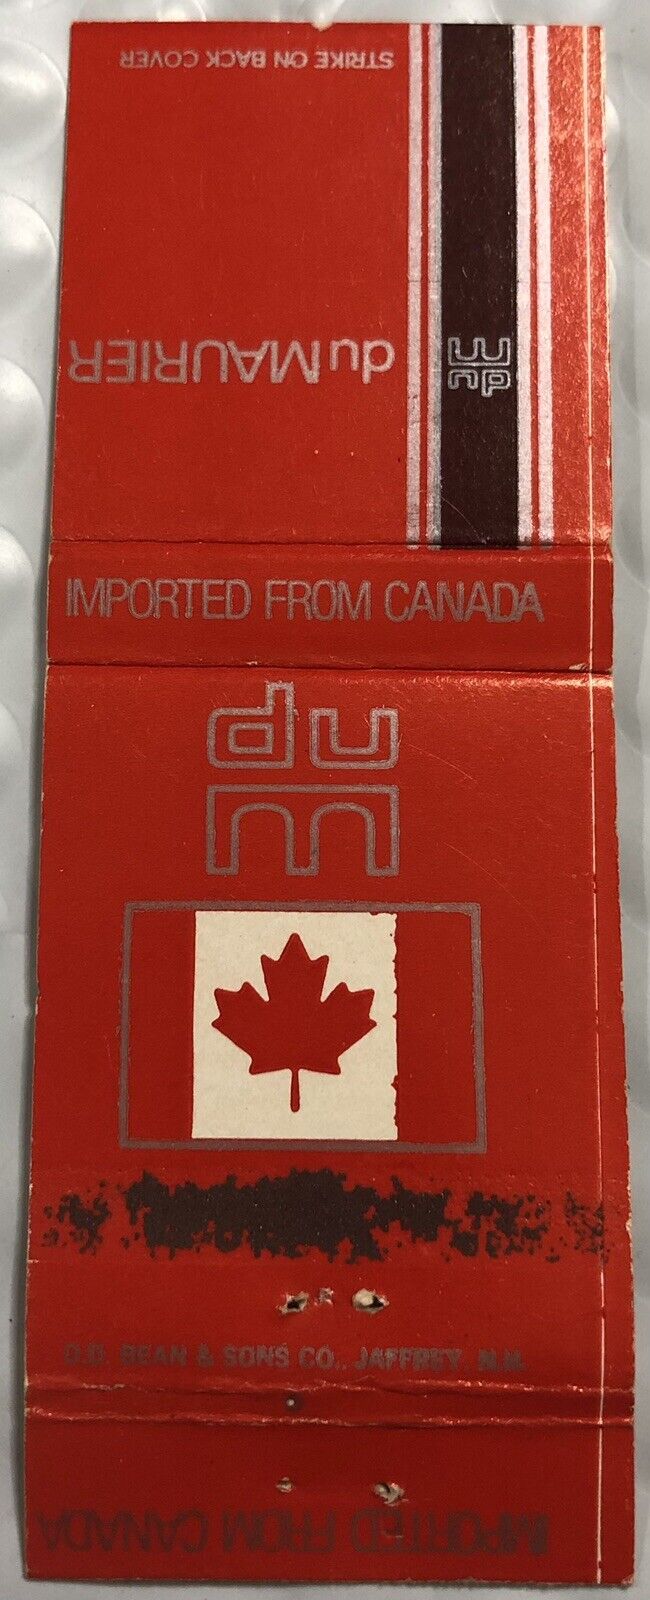 Vintage 20 Strike Matchbook Cover - Du Maurier Cigarettes Canada